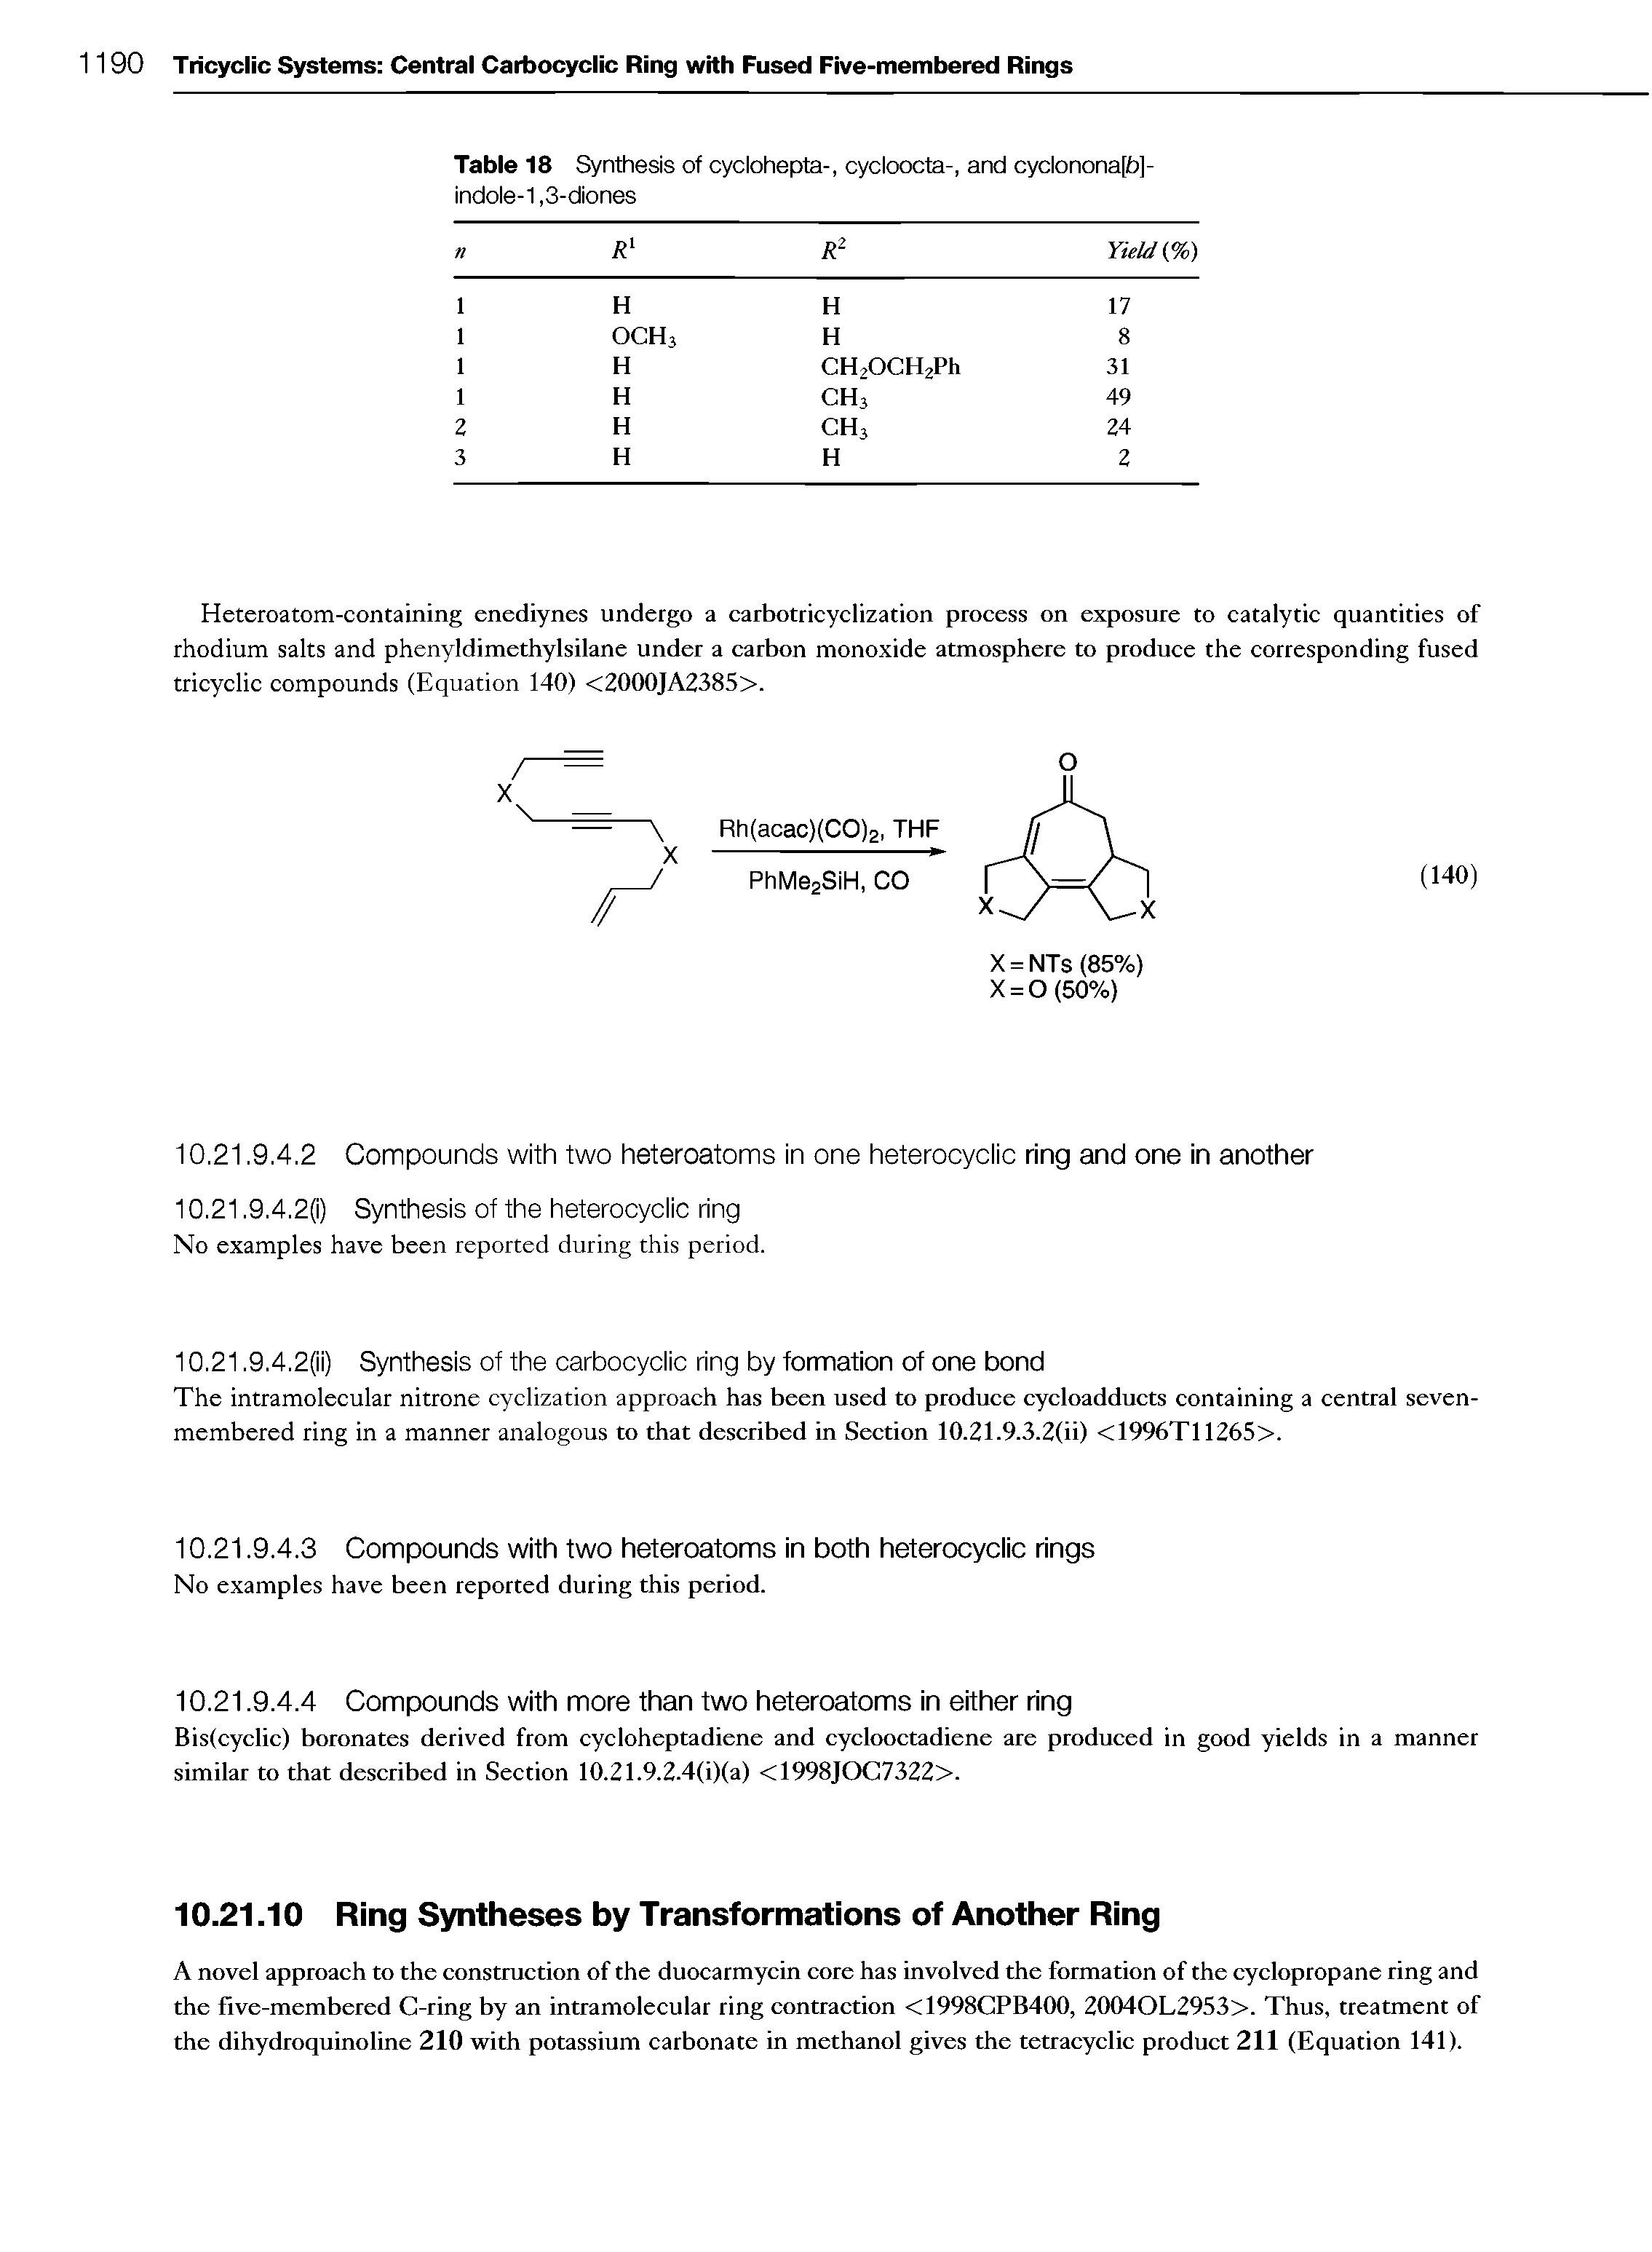 Table 18 Synthesis of cyclohepta-, cycloocta-, and cyclonona[fa]-indole-1,3-diones...